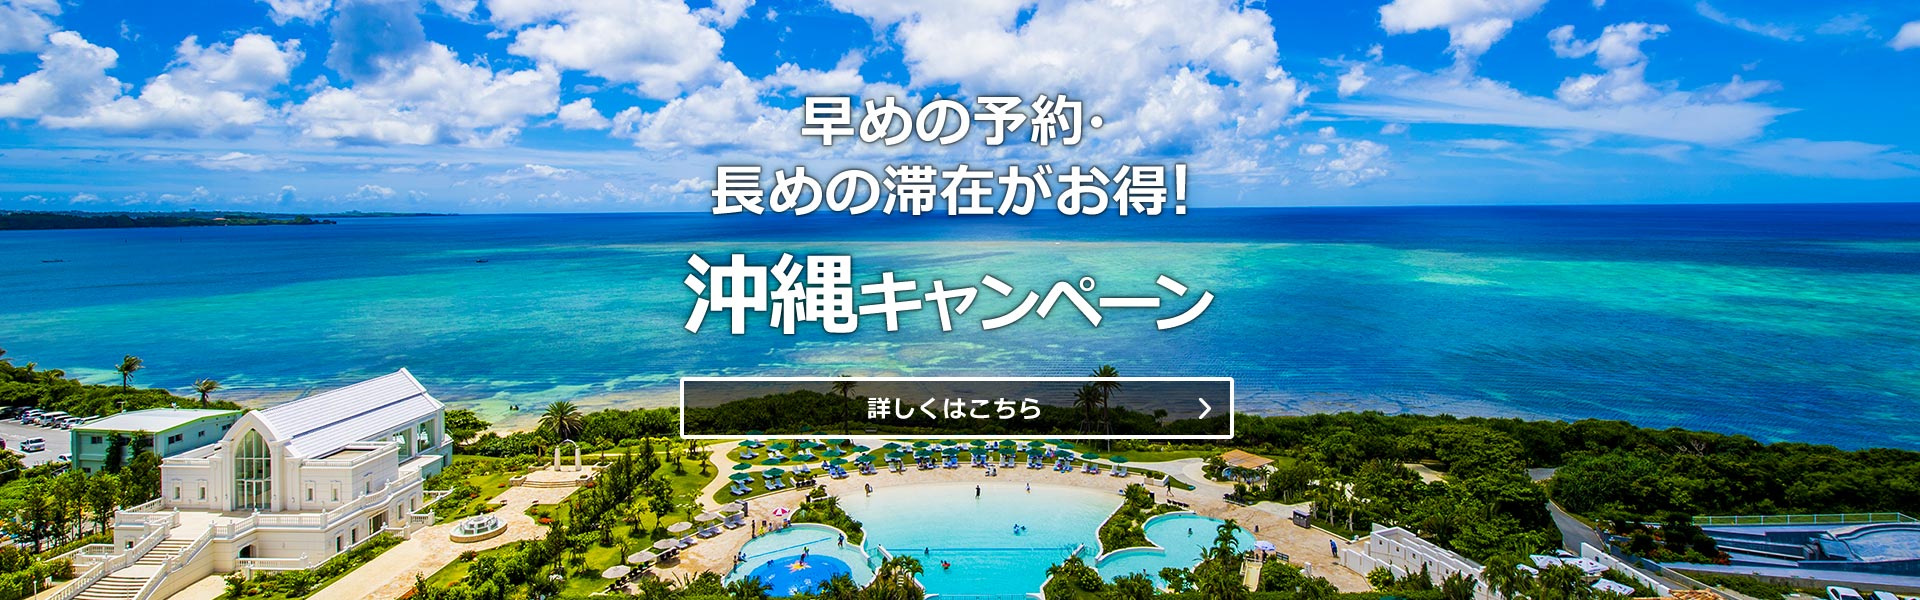 沖縄キャンペーン